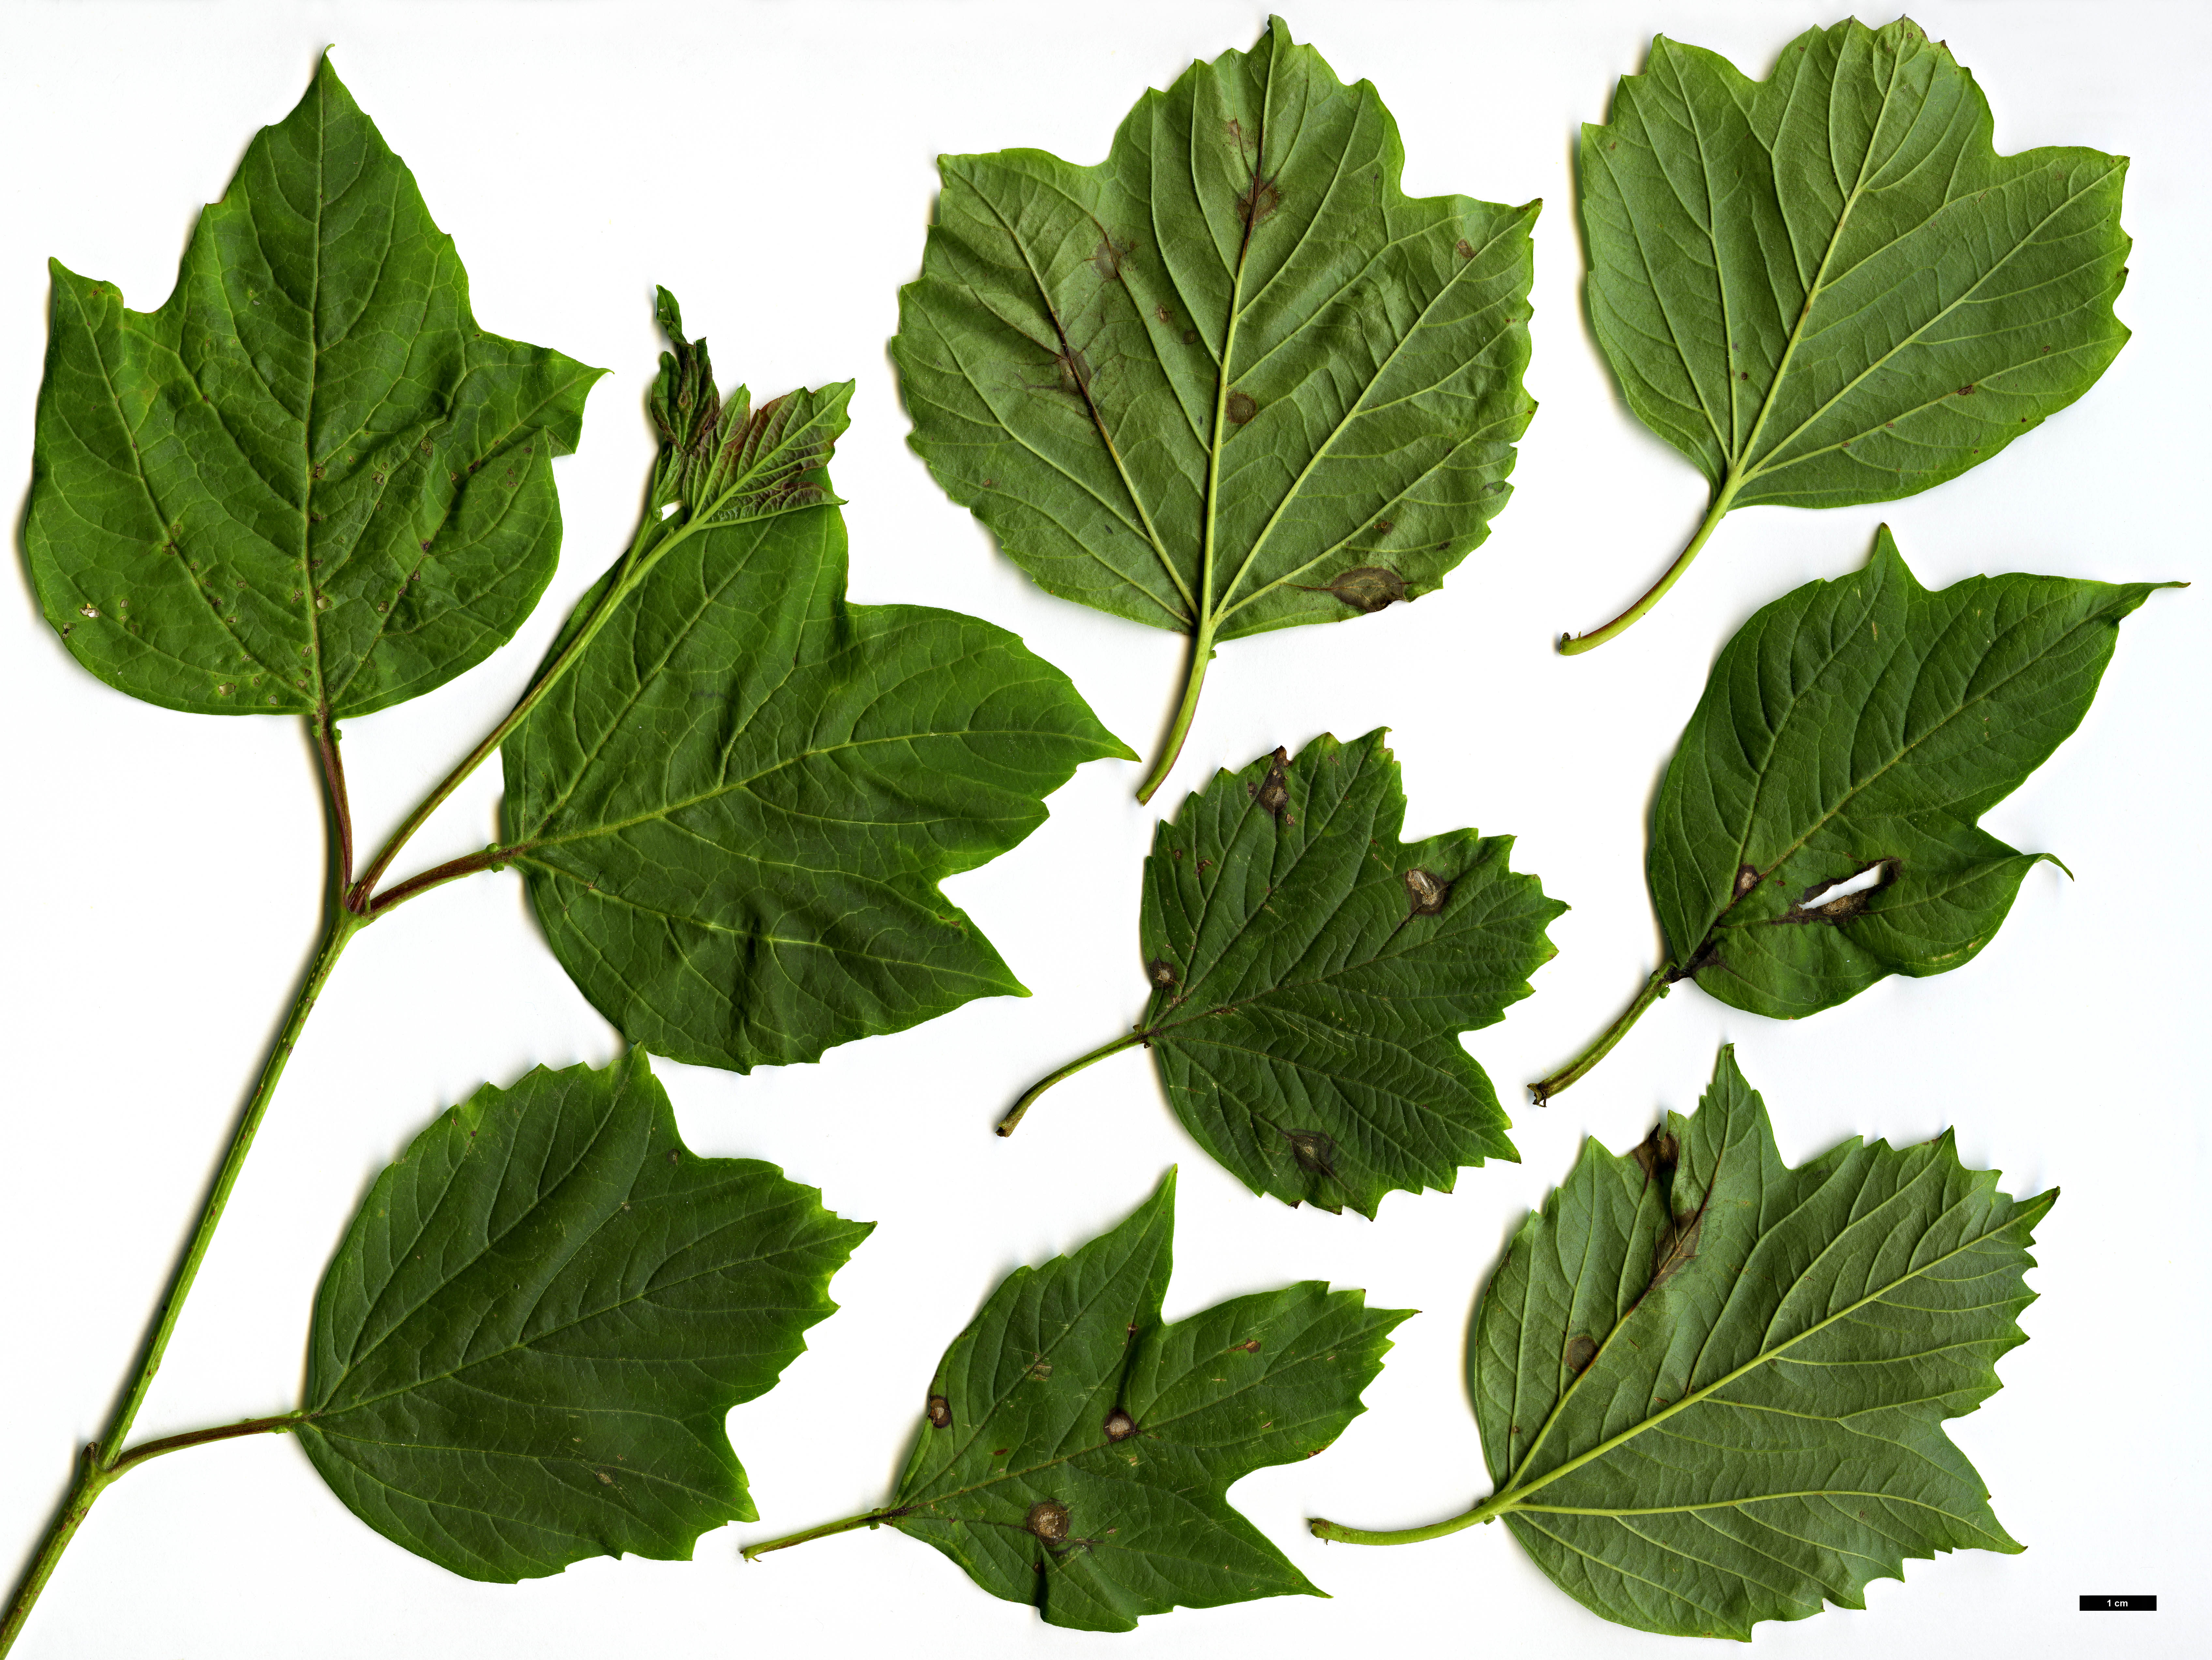 High resolution image: Family: Adoxaceae - Genus: Viburnum - Taxon: opulus - SpeciesSub: var. calvescens